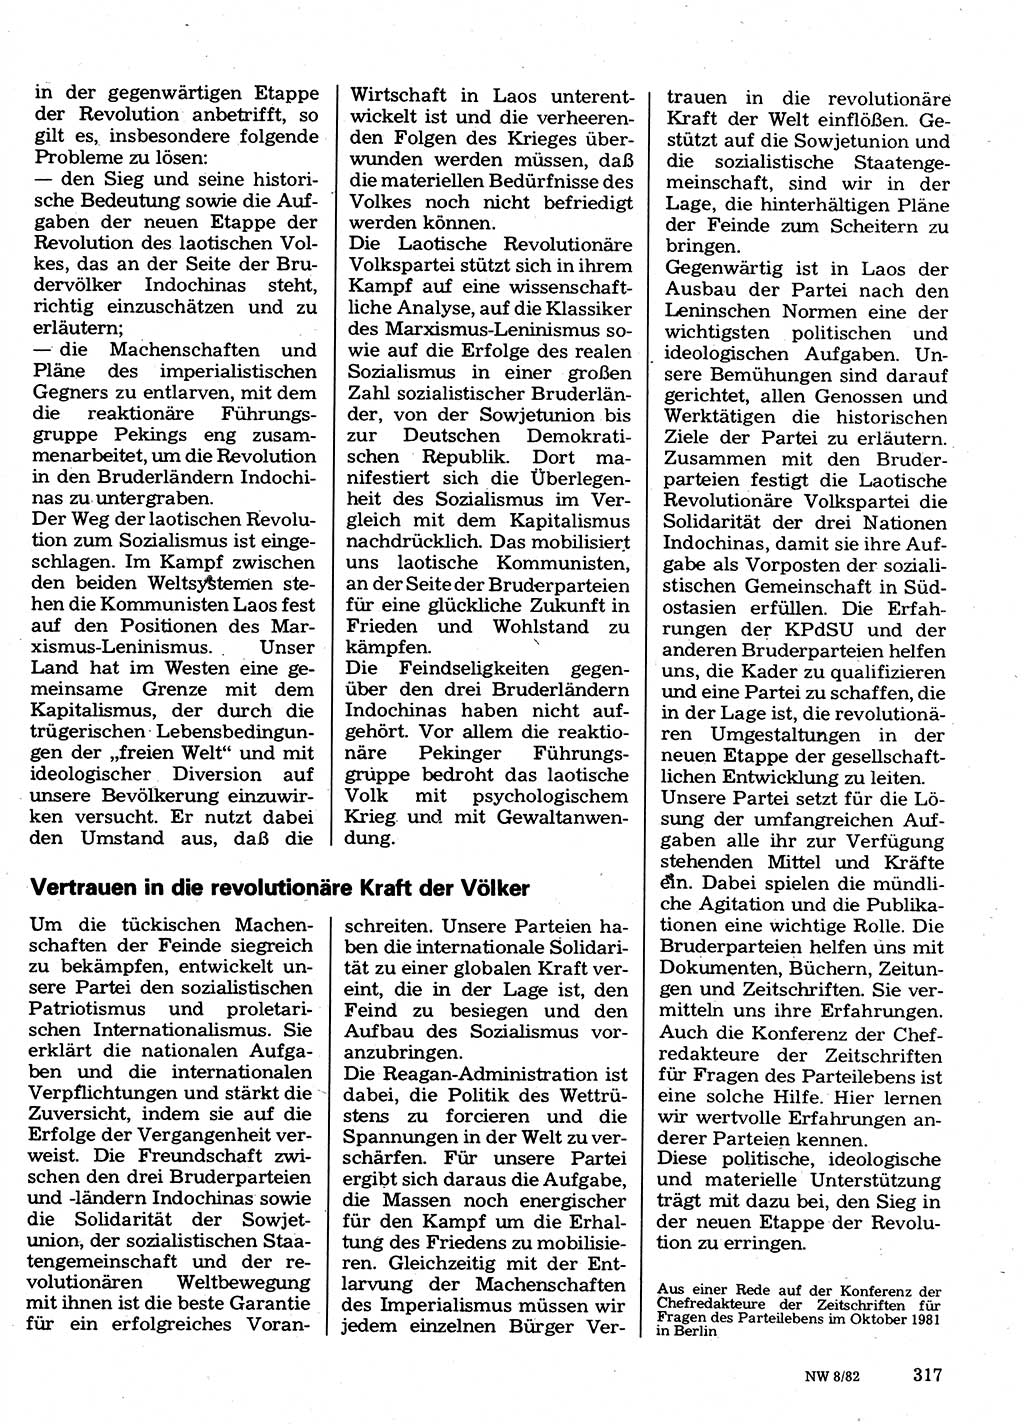 Neuer Weg (NW), Organ des Zentralkomitees (ZK) der SED (Sozialistische Einheitspartei Deutschlands) für Fragen des Parteilebens, 37. Jahrgang [Deutsche Demokratische Republik (DDR)] 1982, Seite 317 (NW ZK SED DDR 1982, S. 317)